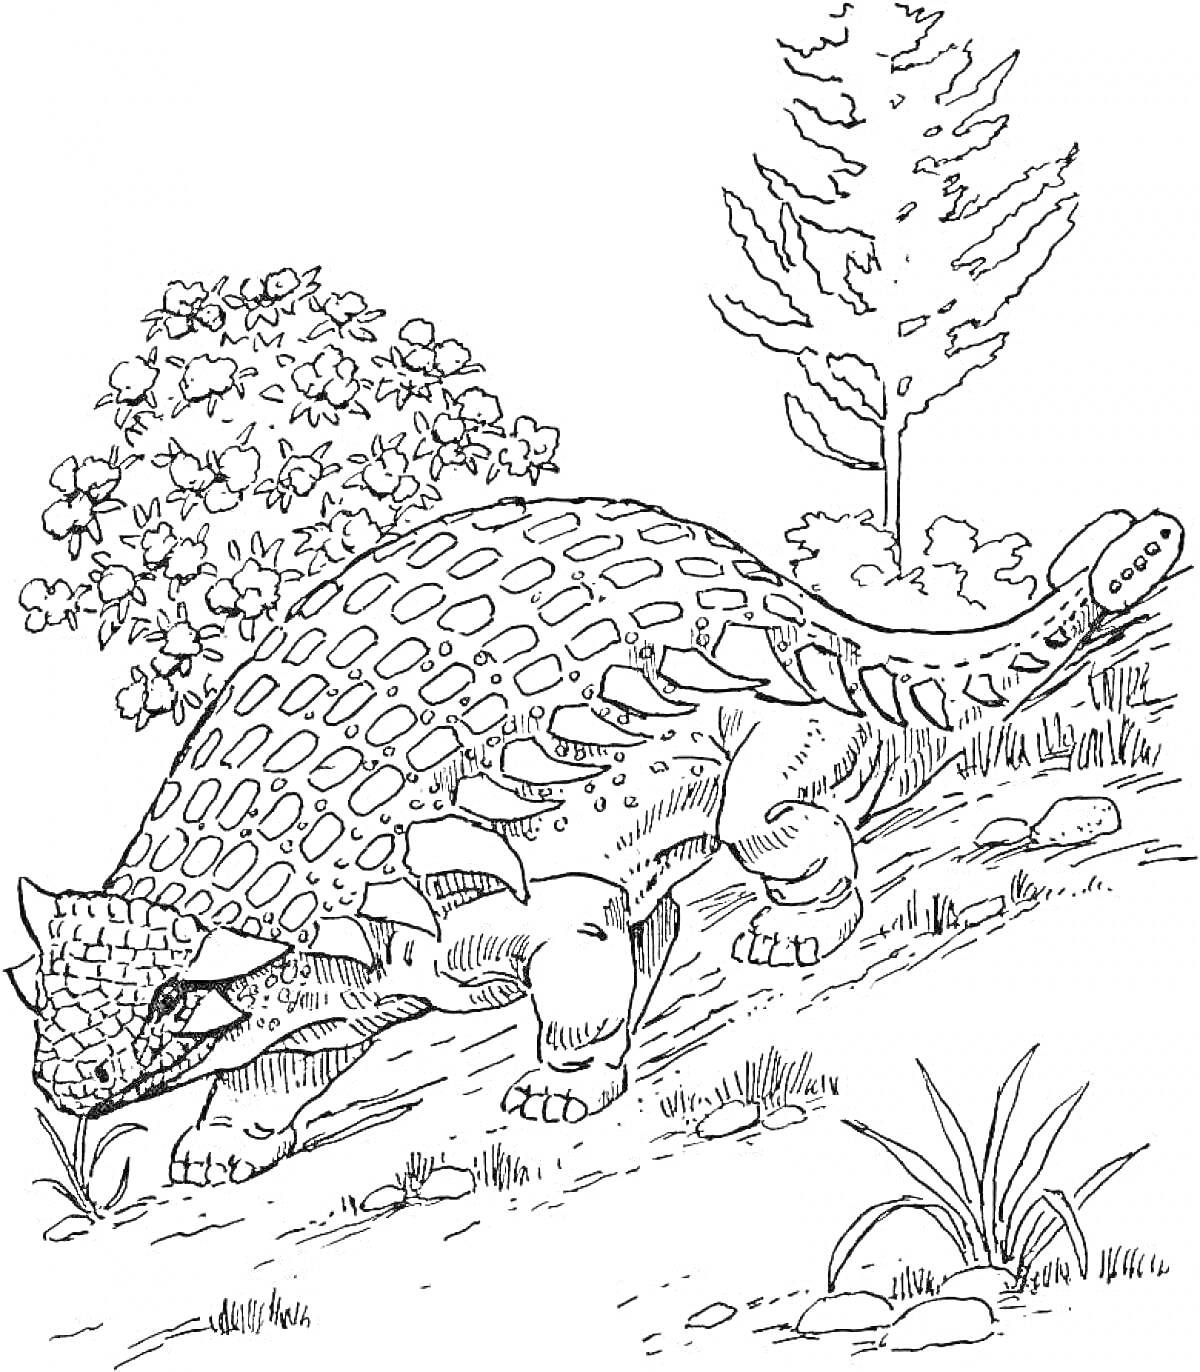 Раскраска анкилозавр на склоне с растительностью (дерево и куст)